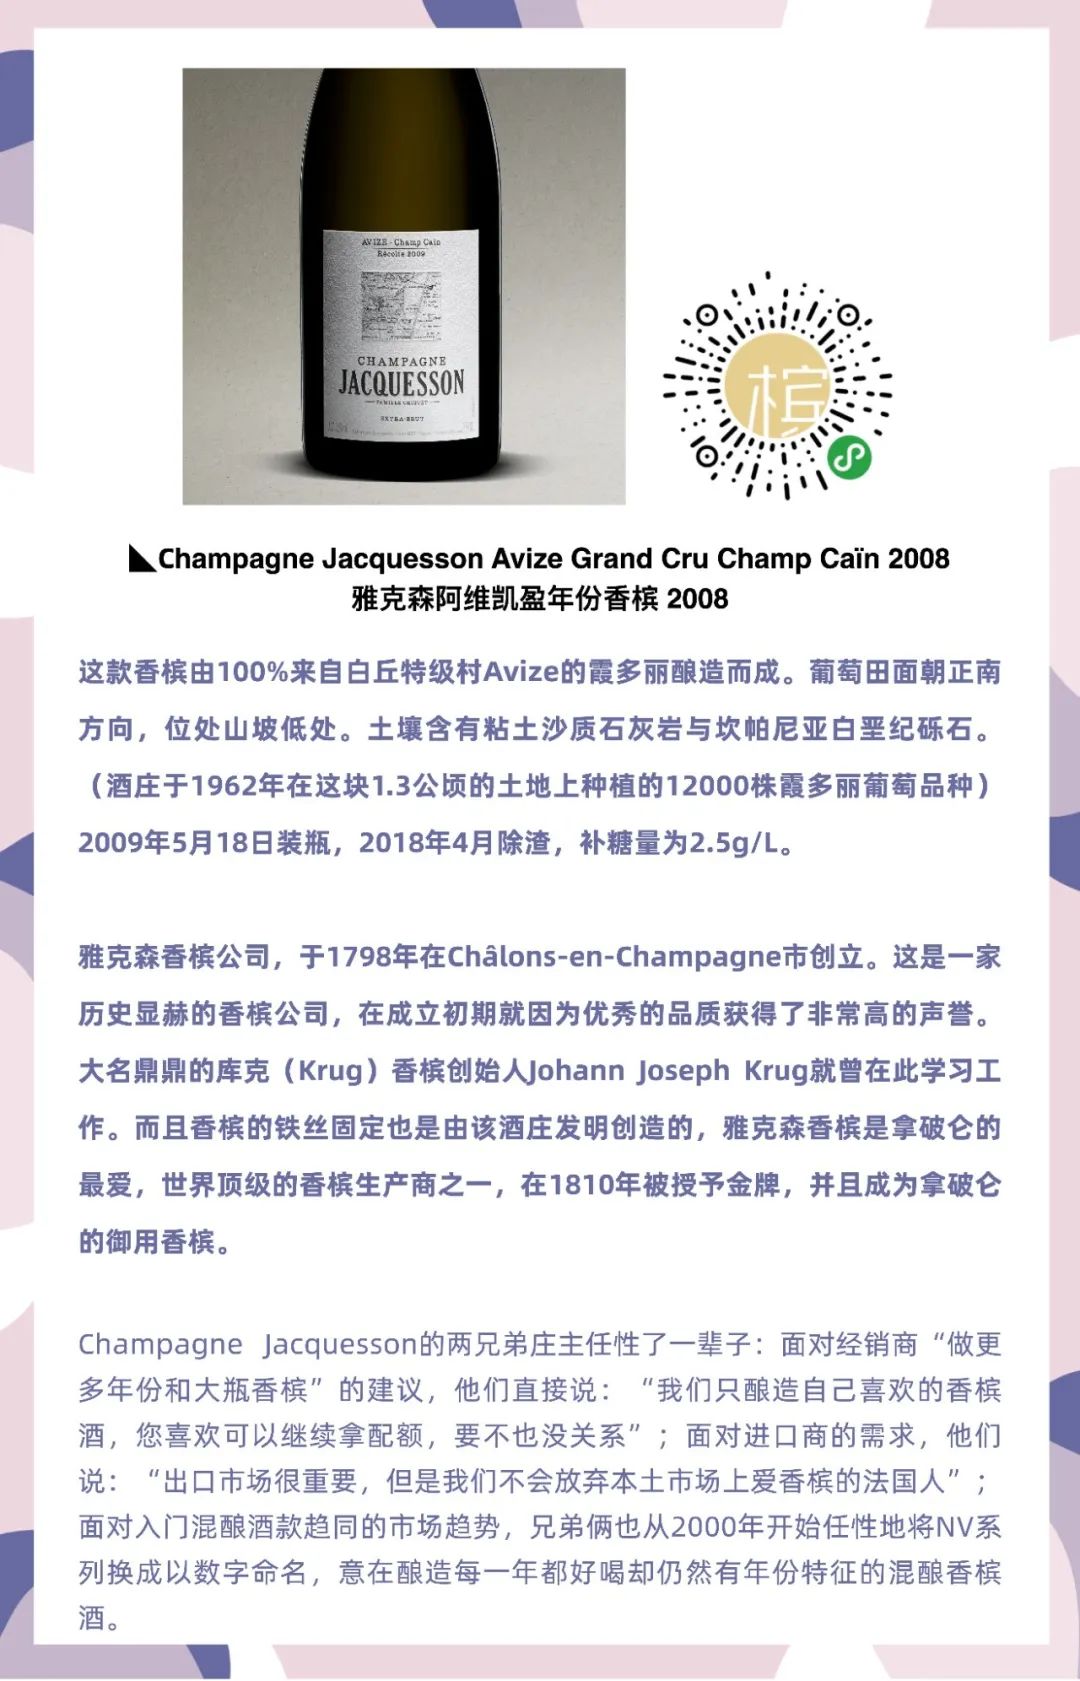 7.29 上海｜盲品冠军Sam的香槟课：年份白中白香槟对比品鉴 ⎡香槟客的夏天⎦